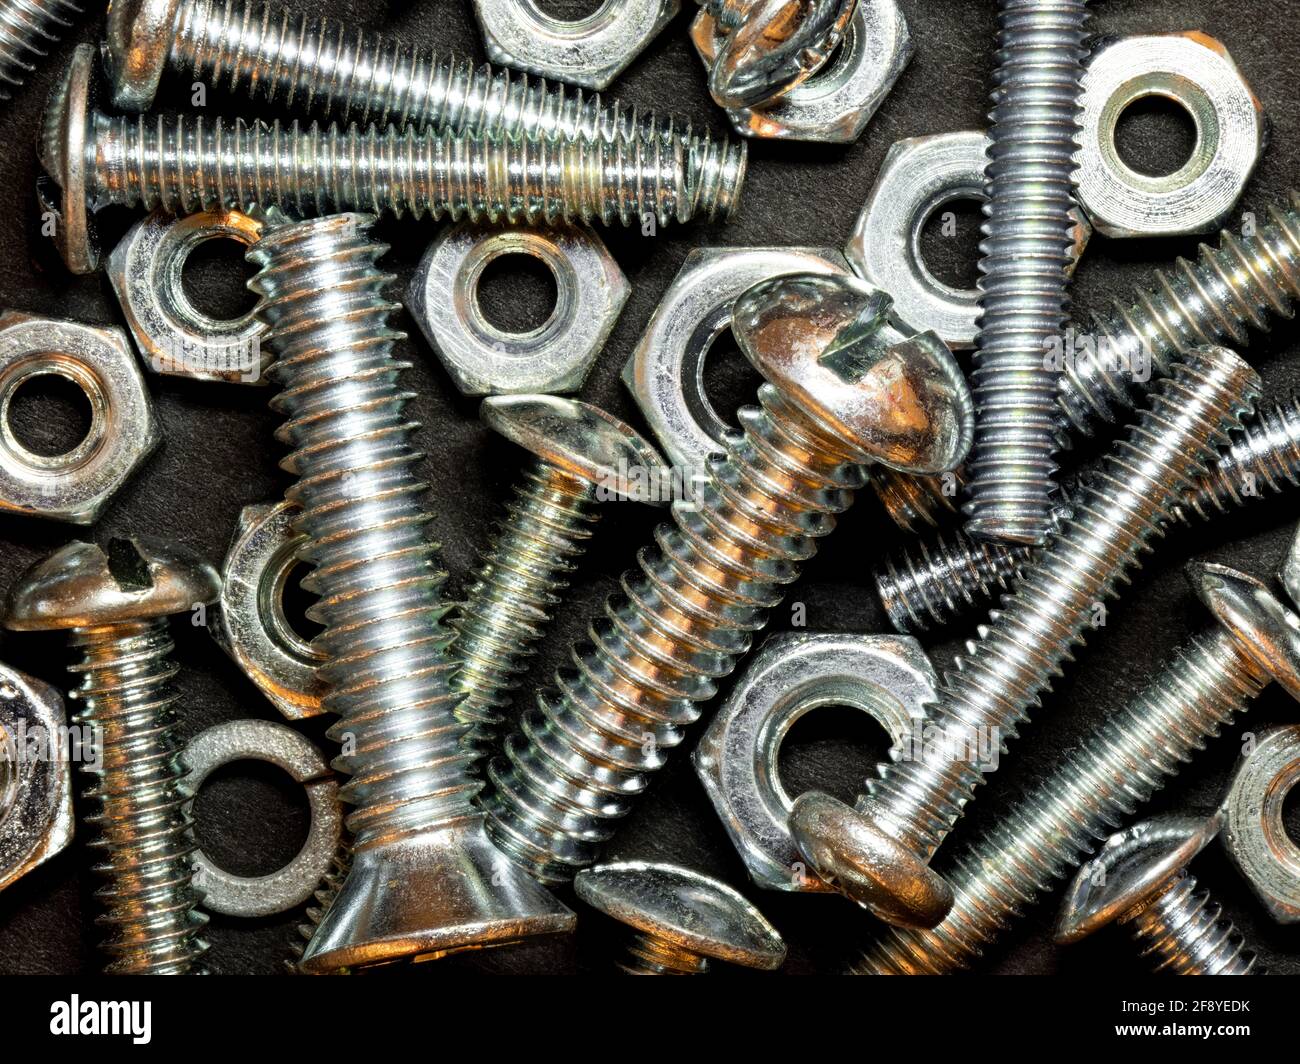 Close-up of metal screws Stock Photo